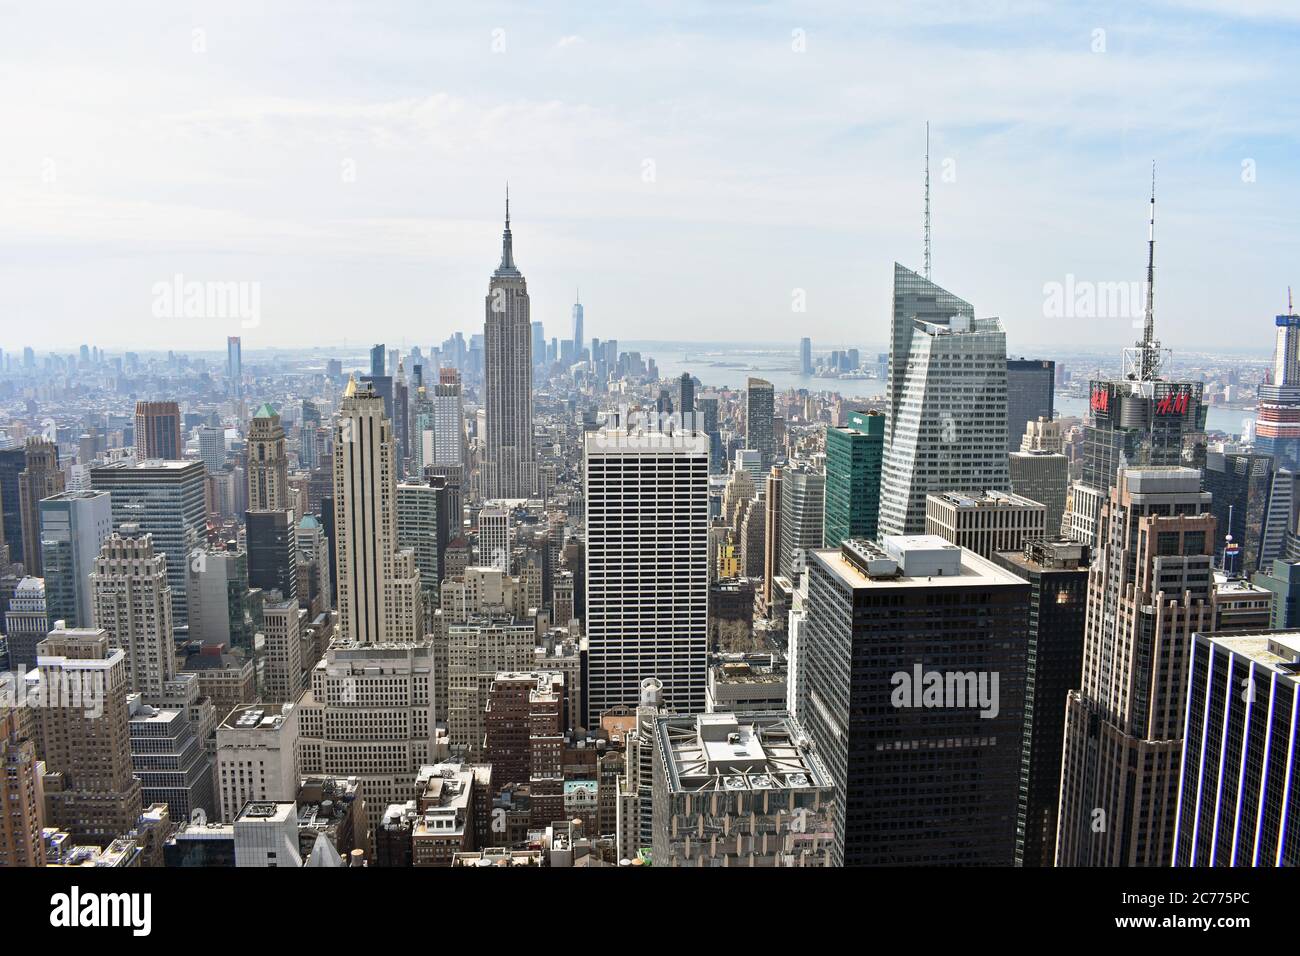 Eine weite Aussicht vom Top of the Rock in New York City mit Blick nach Süden zur Innenstadt, zum World Trade Center, den Time Square Wolkenkratzern und zum Empire State Building. Stockfoto